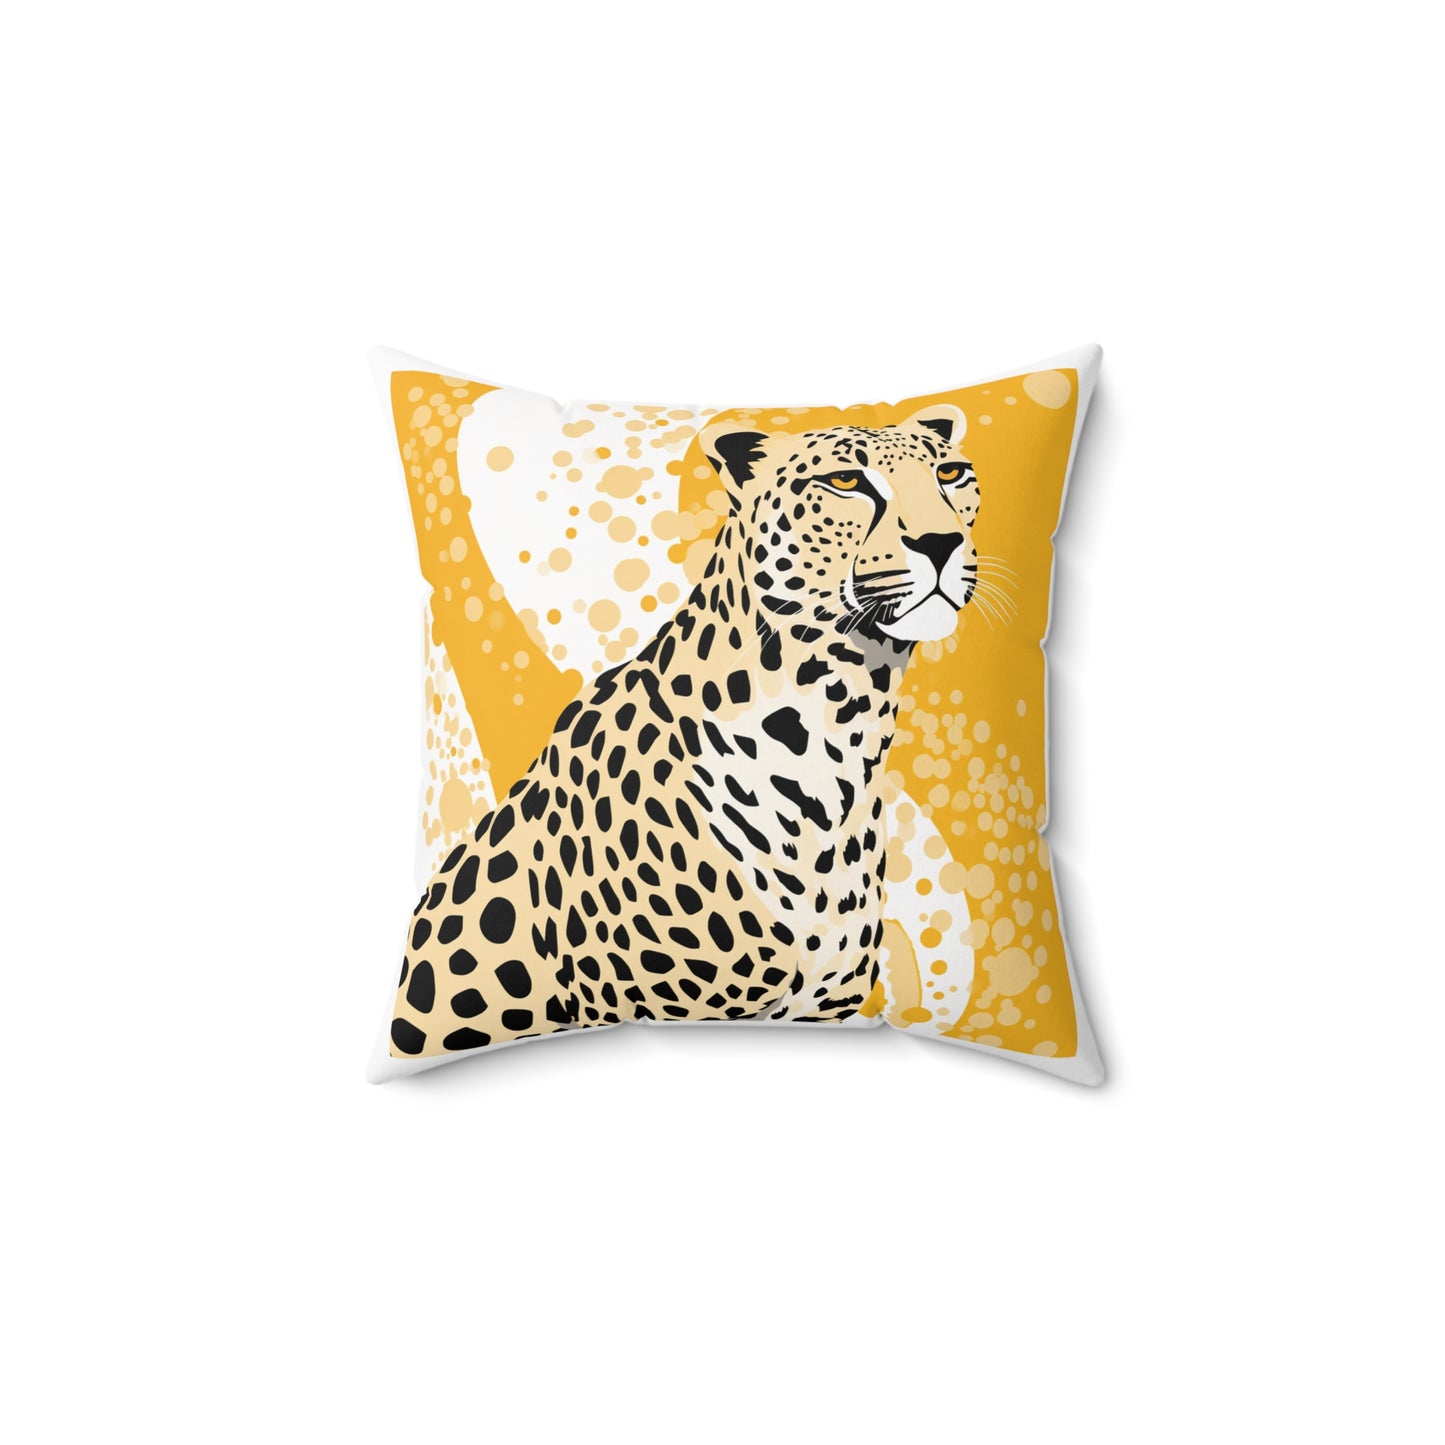 Pensive Cheetah Square Pillow